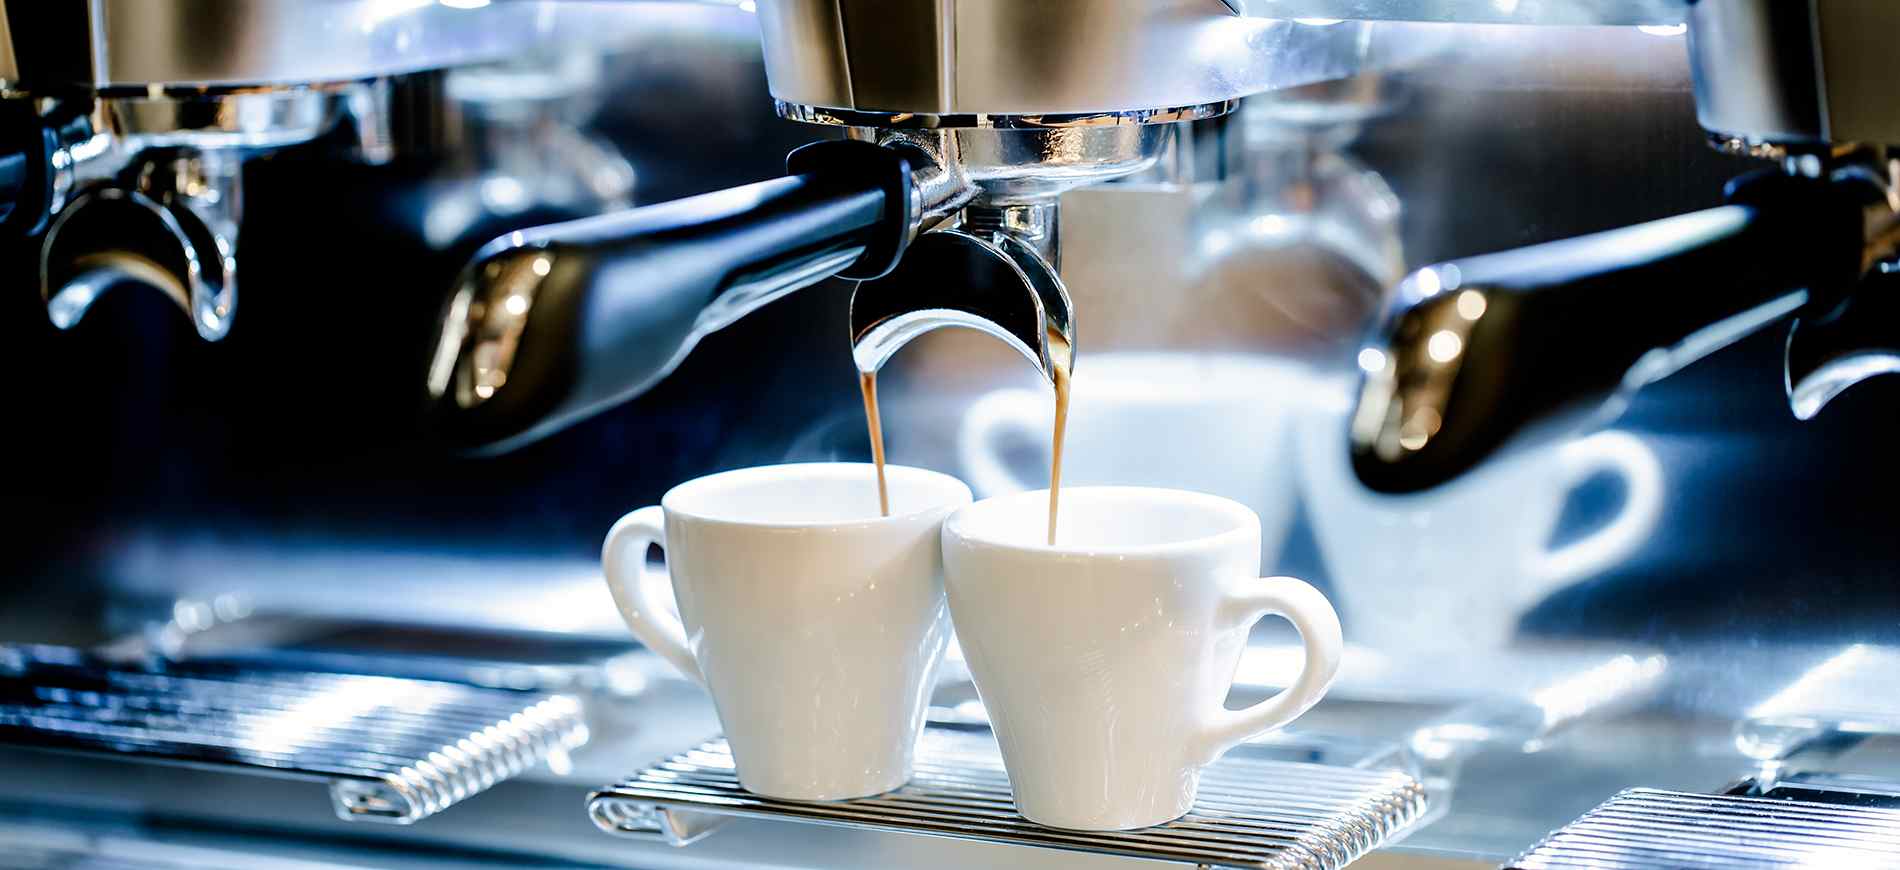 Espresso Kaffee kochen Espressomaschine Preisvergleich Kaffeebohnen Espresso